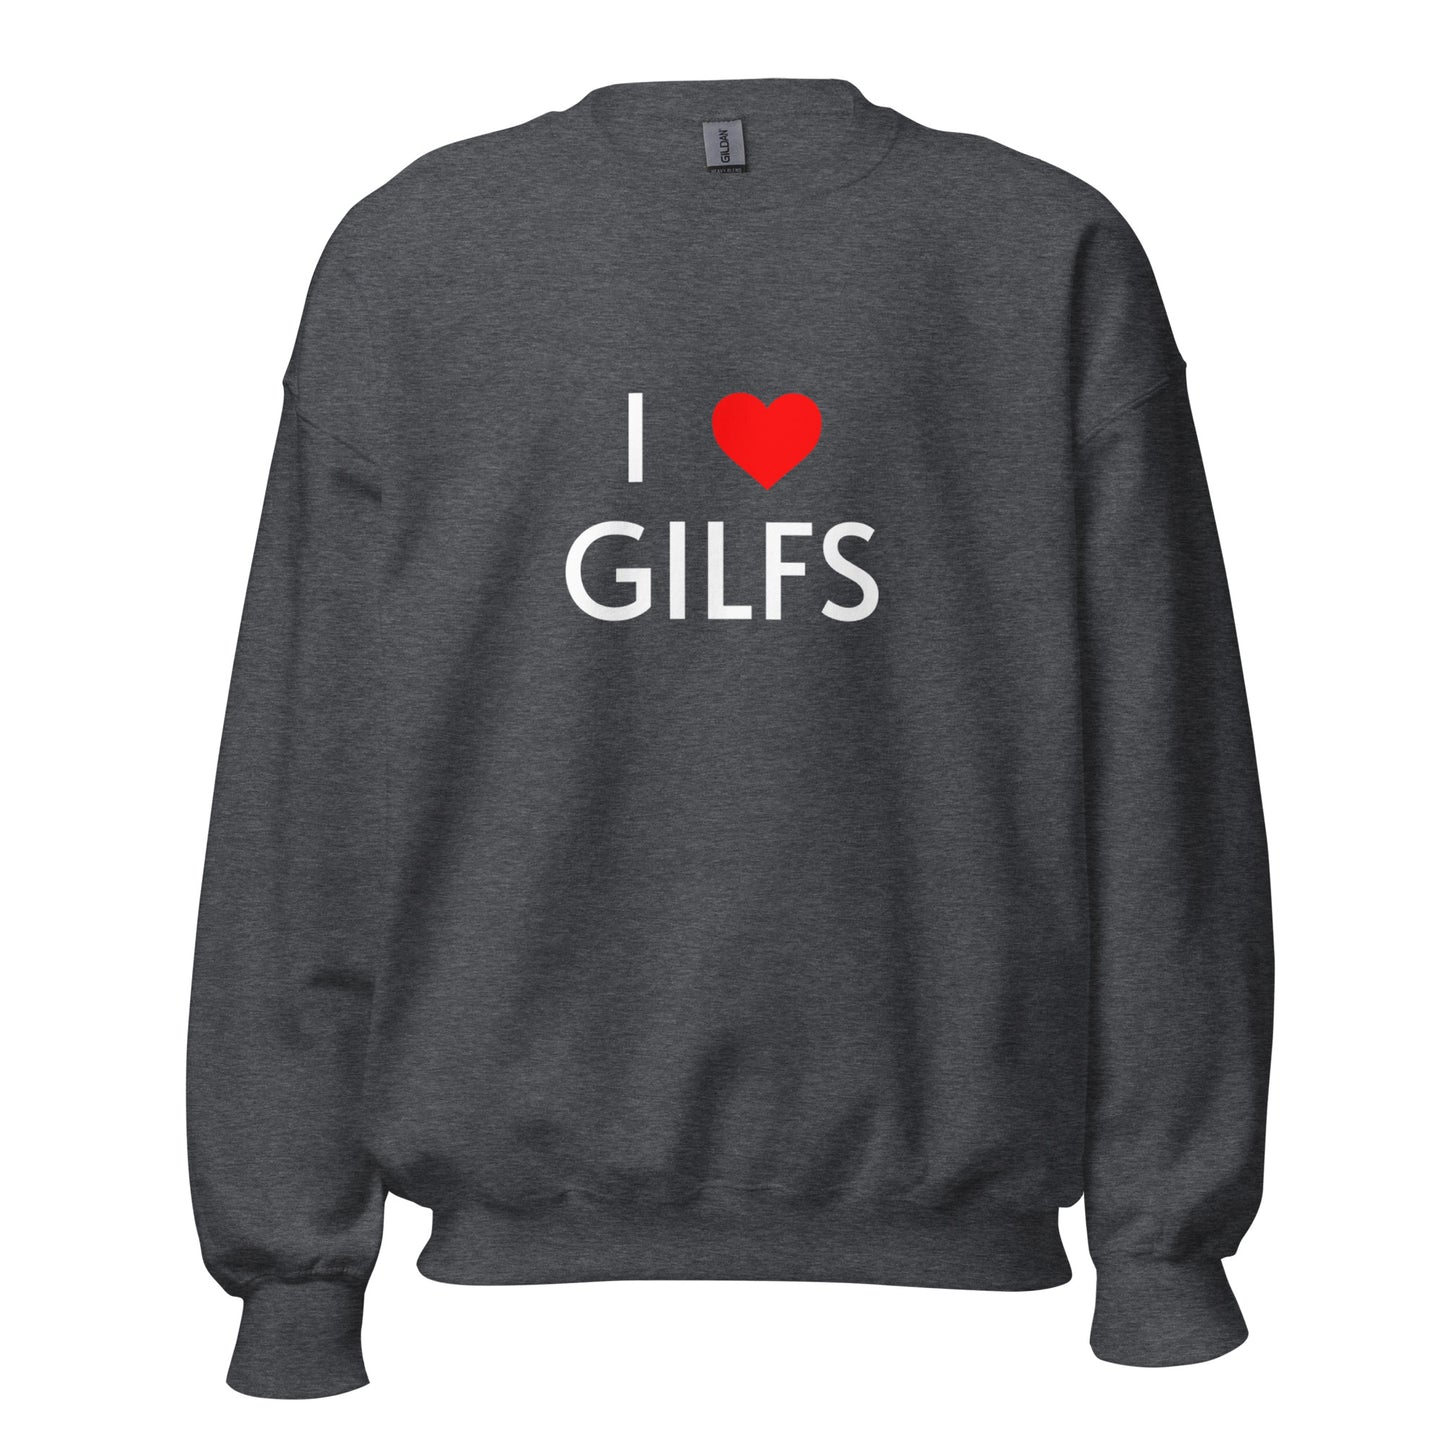 I LOVE GILFS